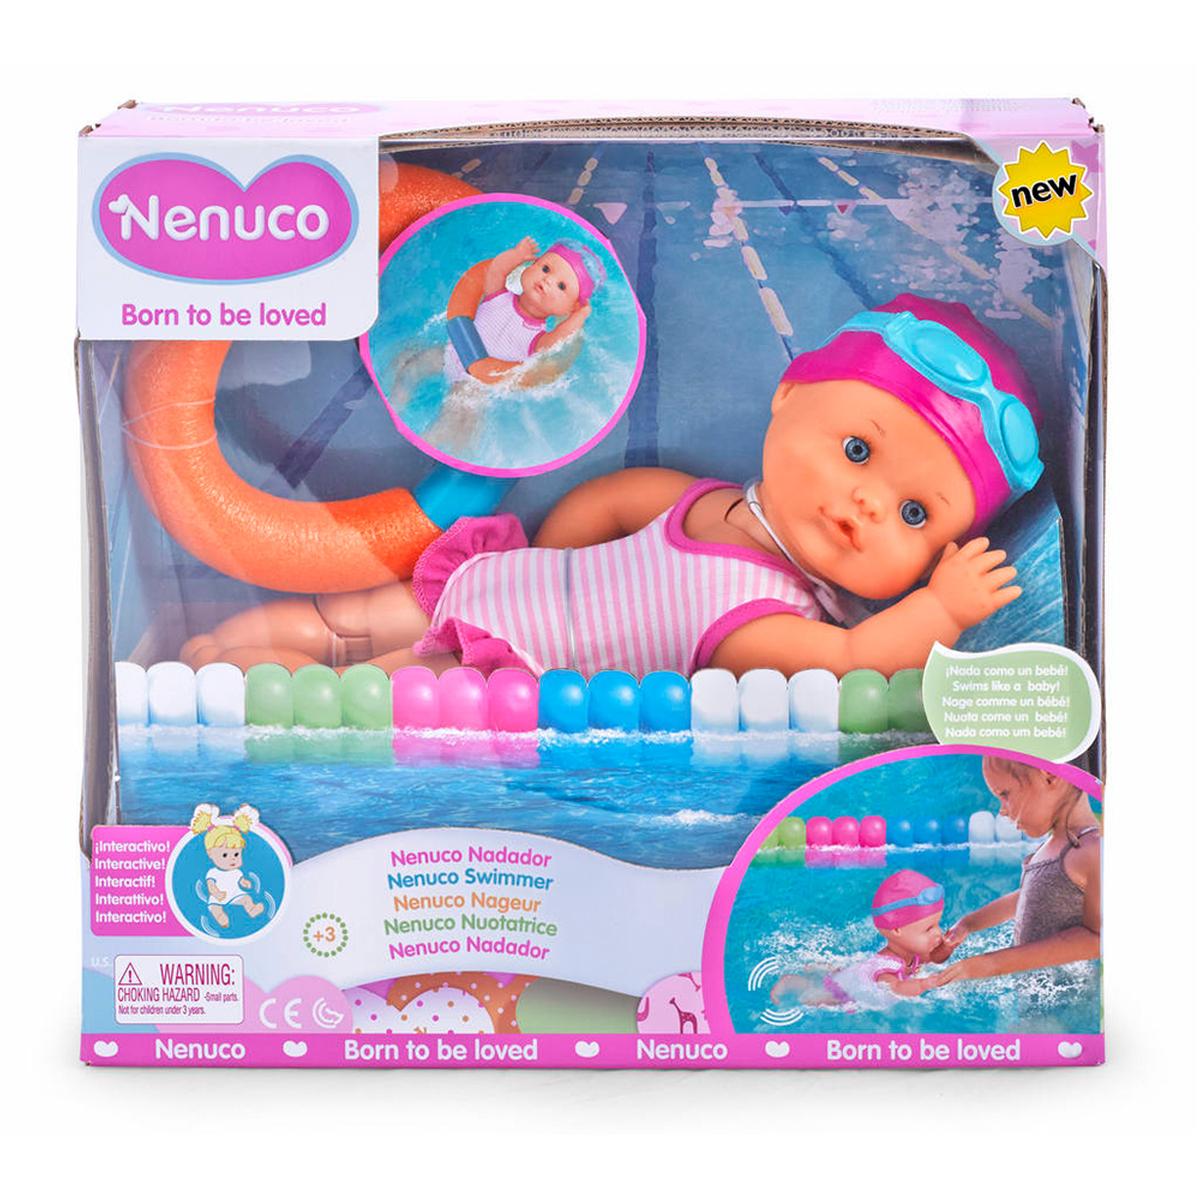 Nenuco - Nenuco Nenuco | Toys"R"Us España